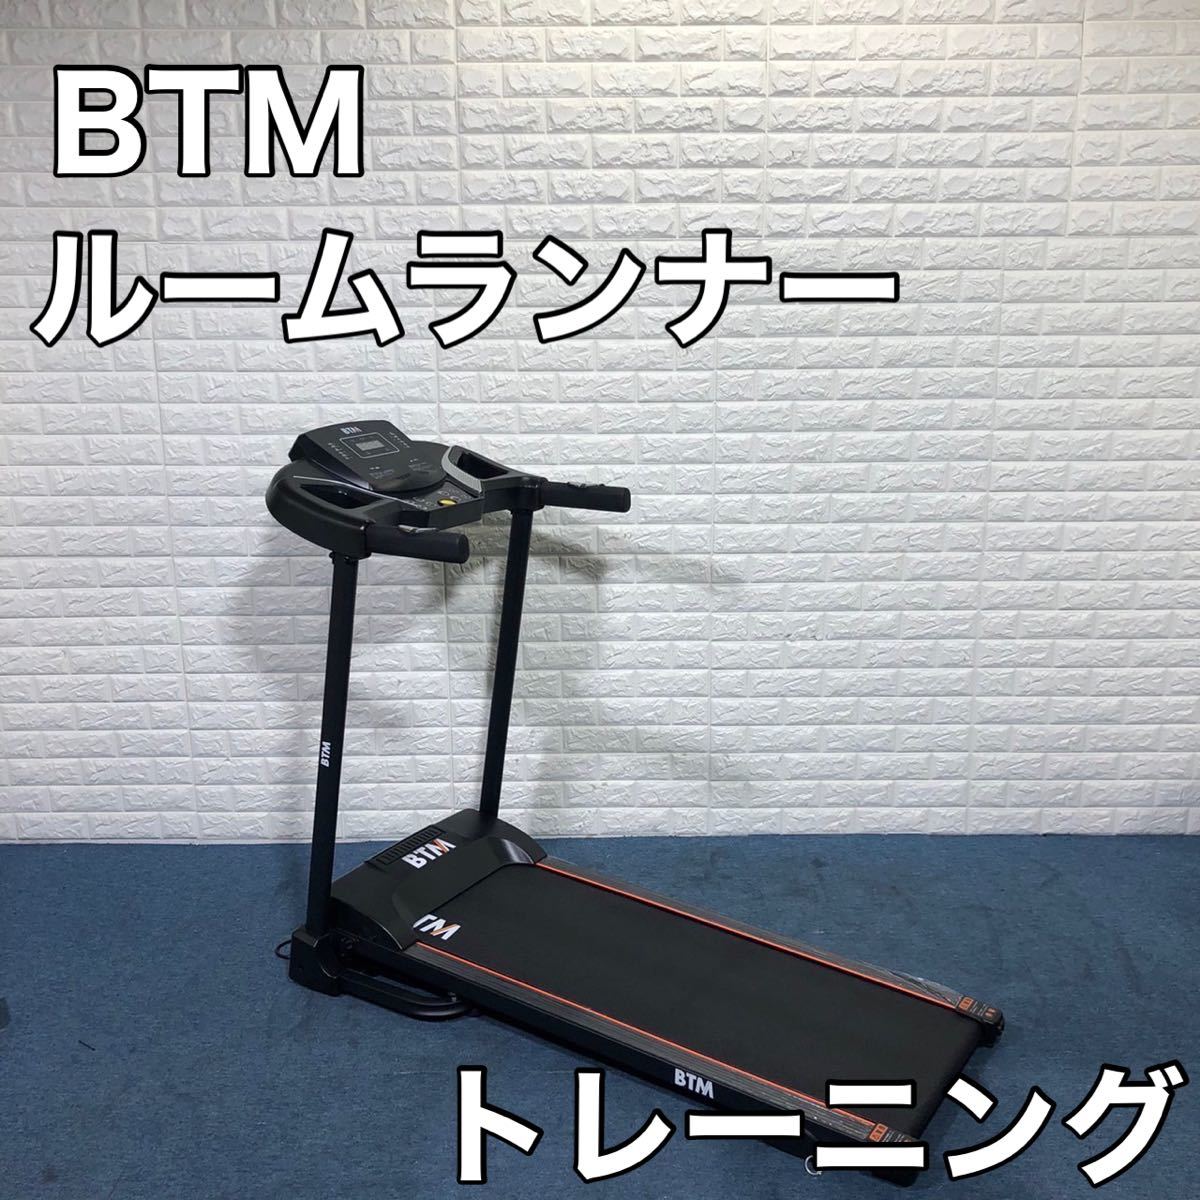 BTM ルームランナー 8051 家庭用 有酸素運動 折り畳み コンパクト www.pn-tanjungkarang.go.id